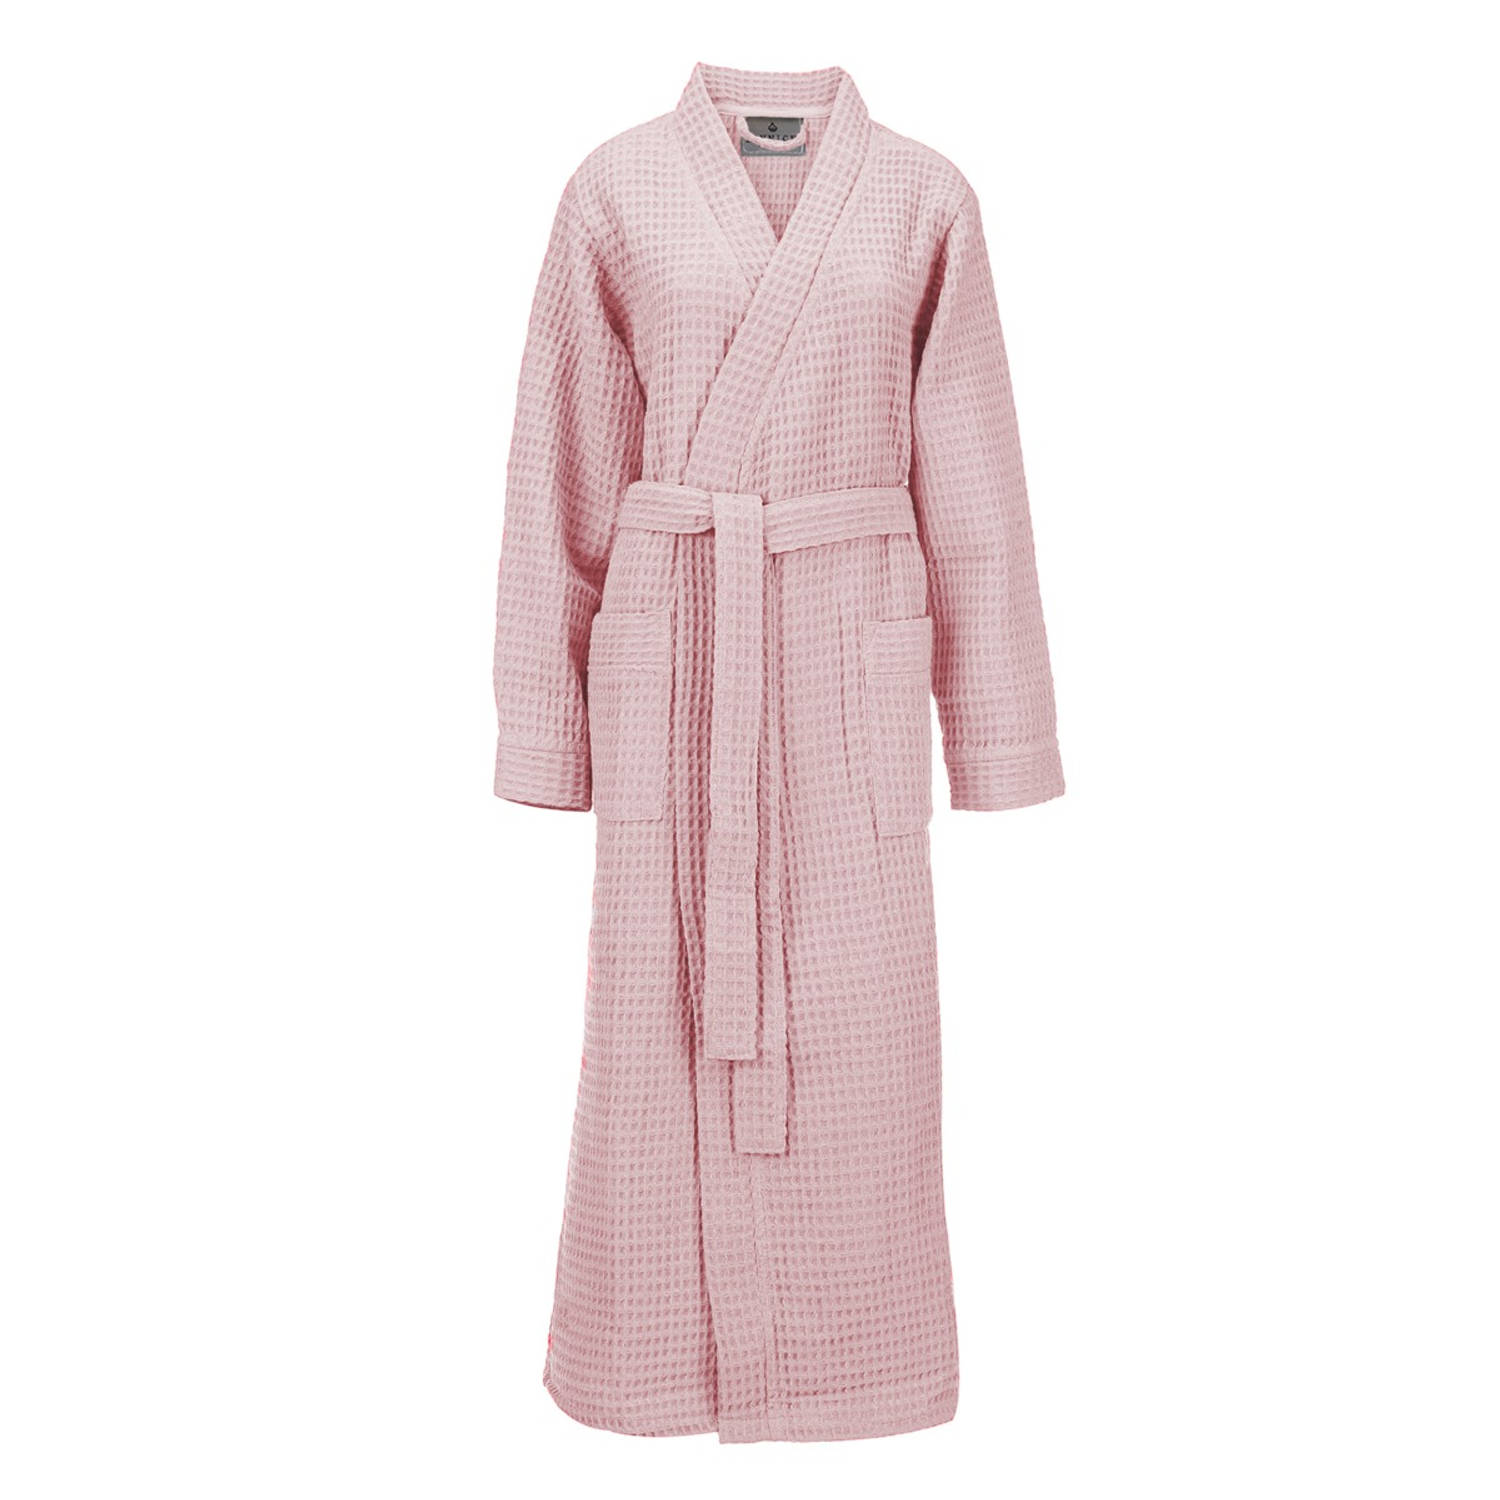 LINNICK Wafel Badjas - Maat XL - Light Pink - Sauna badjas - 100% Katoen Badjas Dames - Badjas Heren